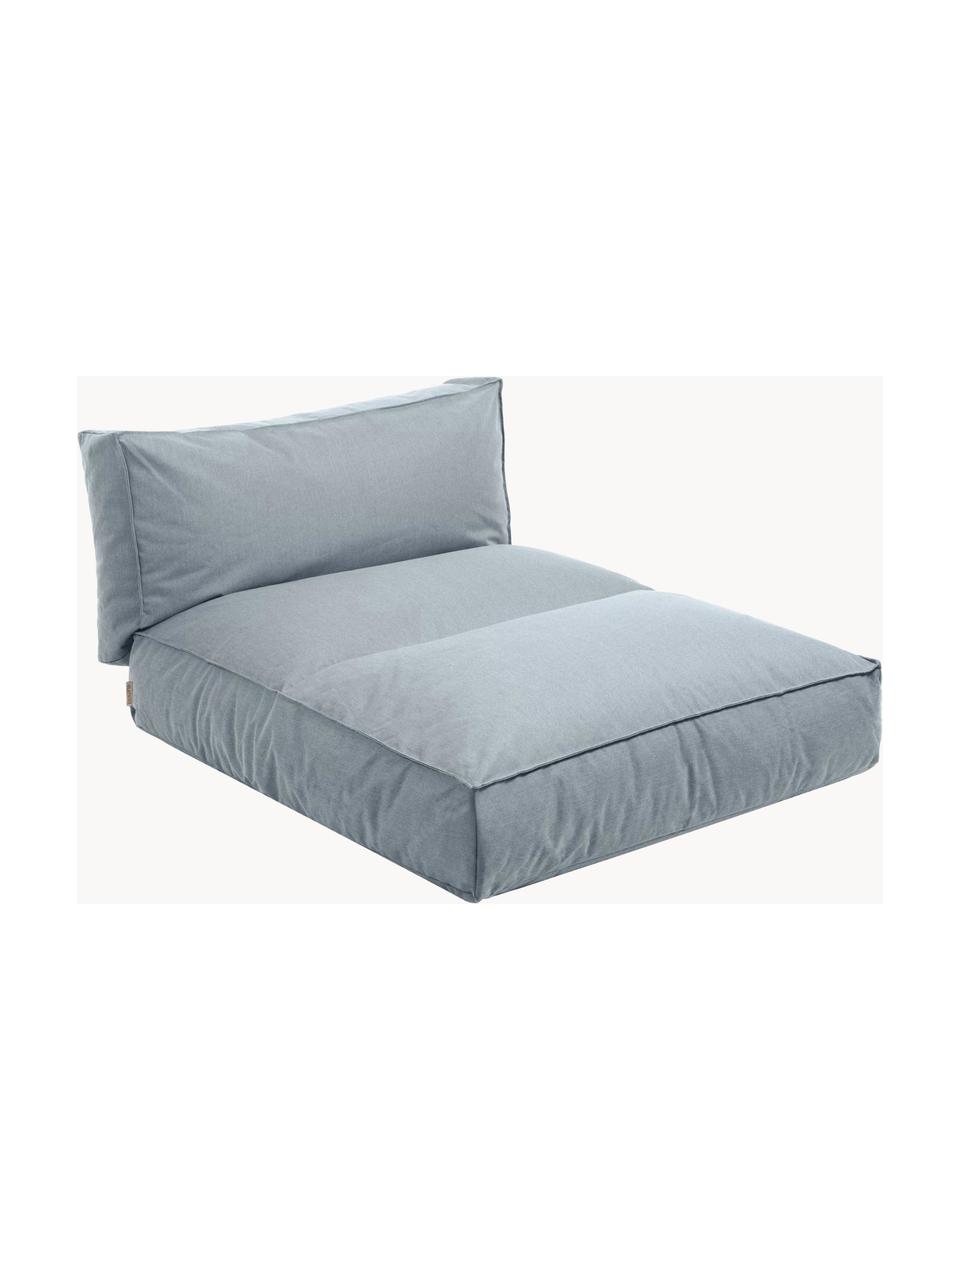 Zewnętrzne łóżko dzienne Stay, Tapicerka: 100% poliester odporny na, Szaroniebieska tkanina, 80 x 190 cm